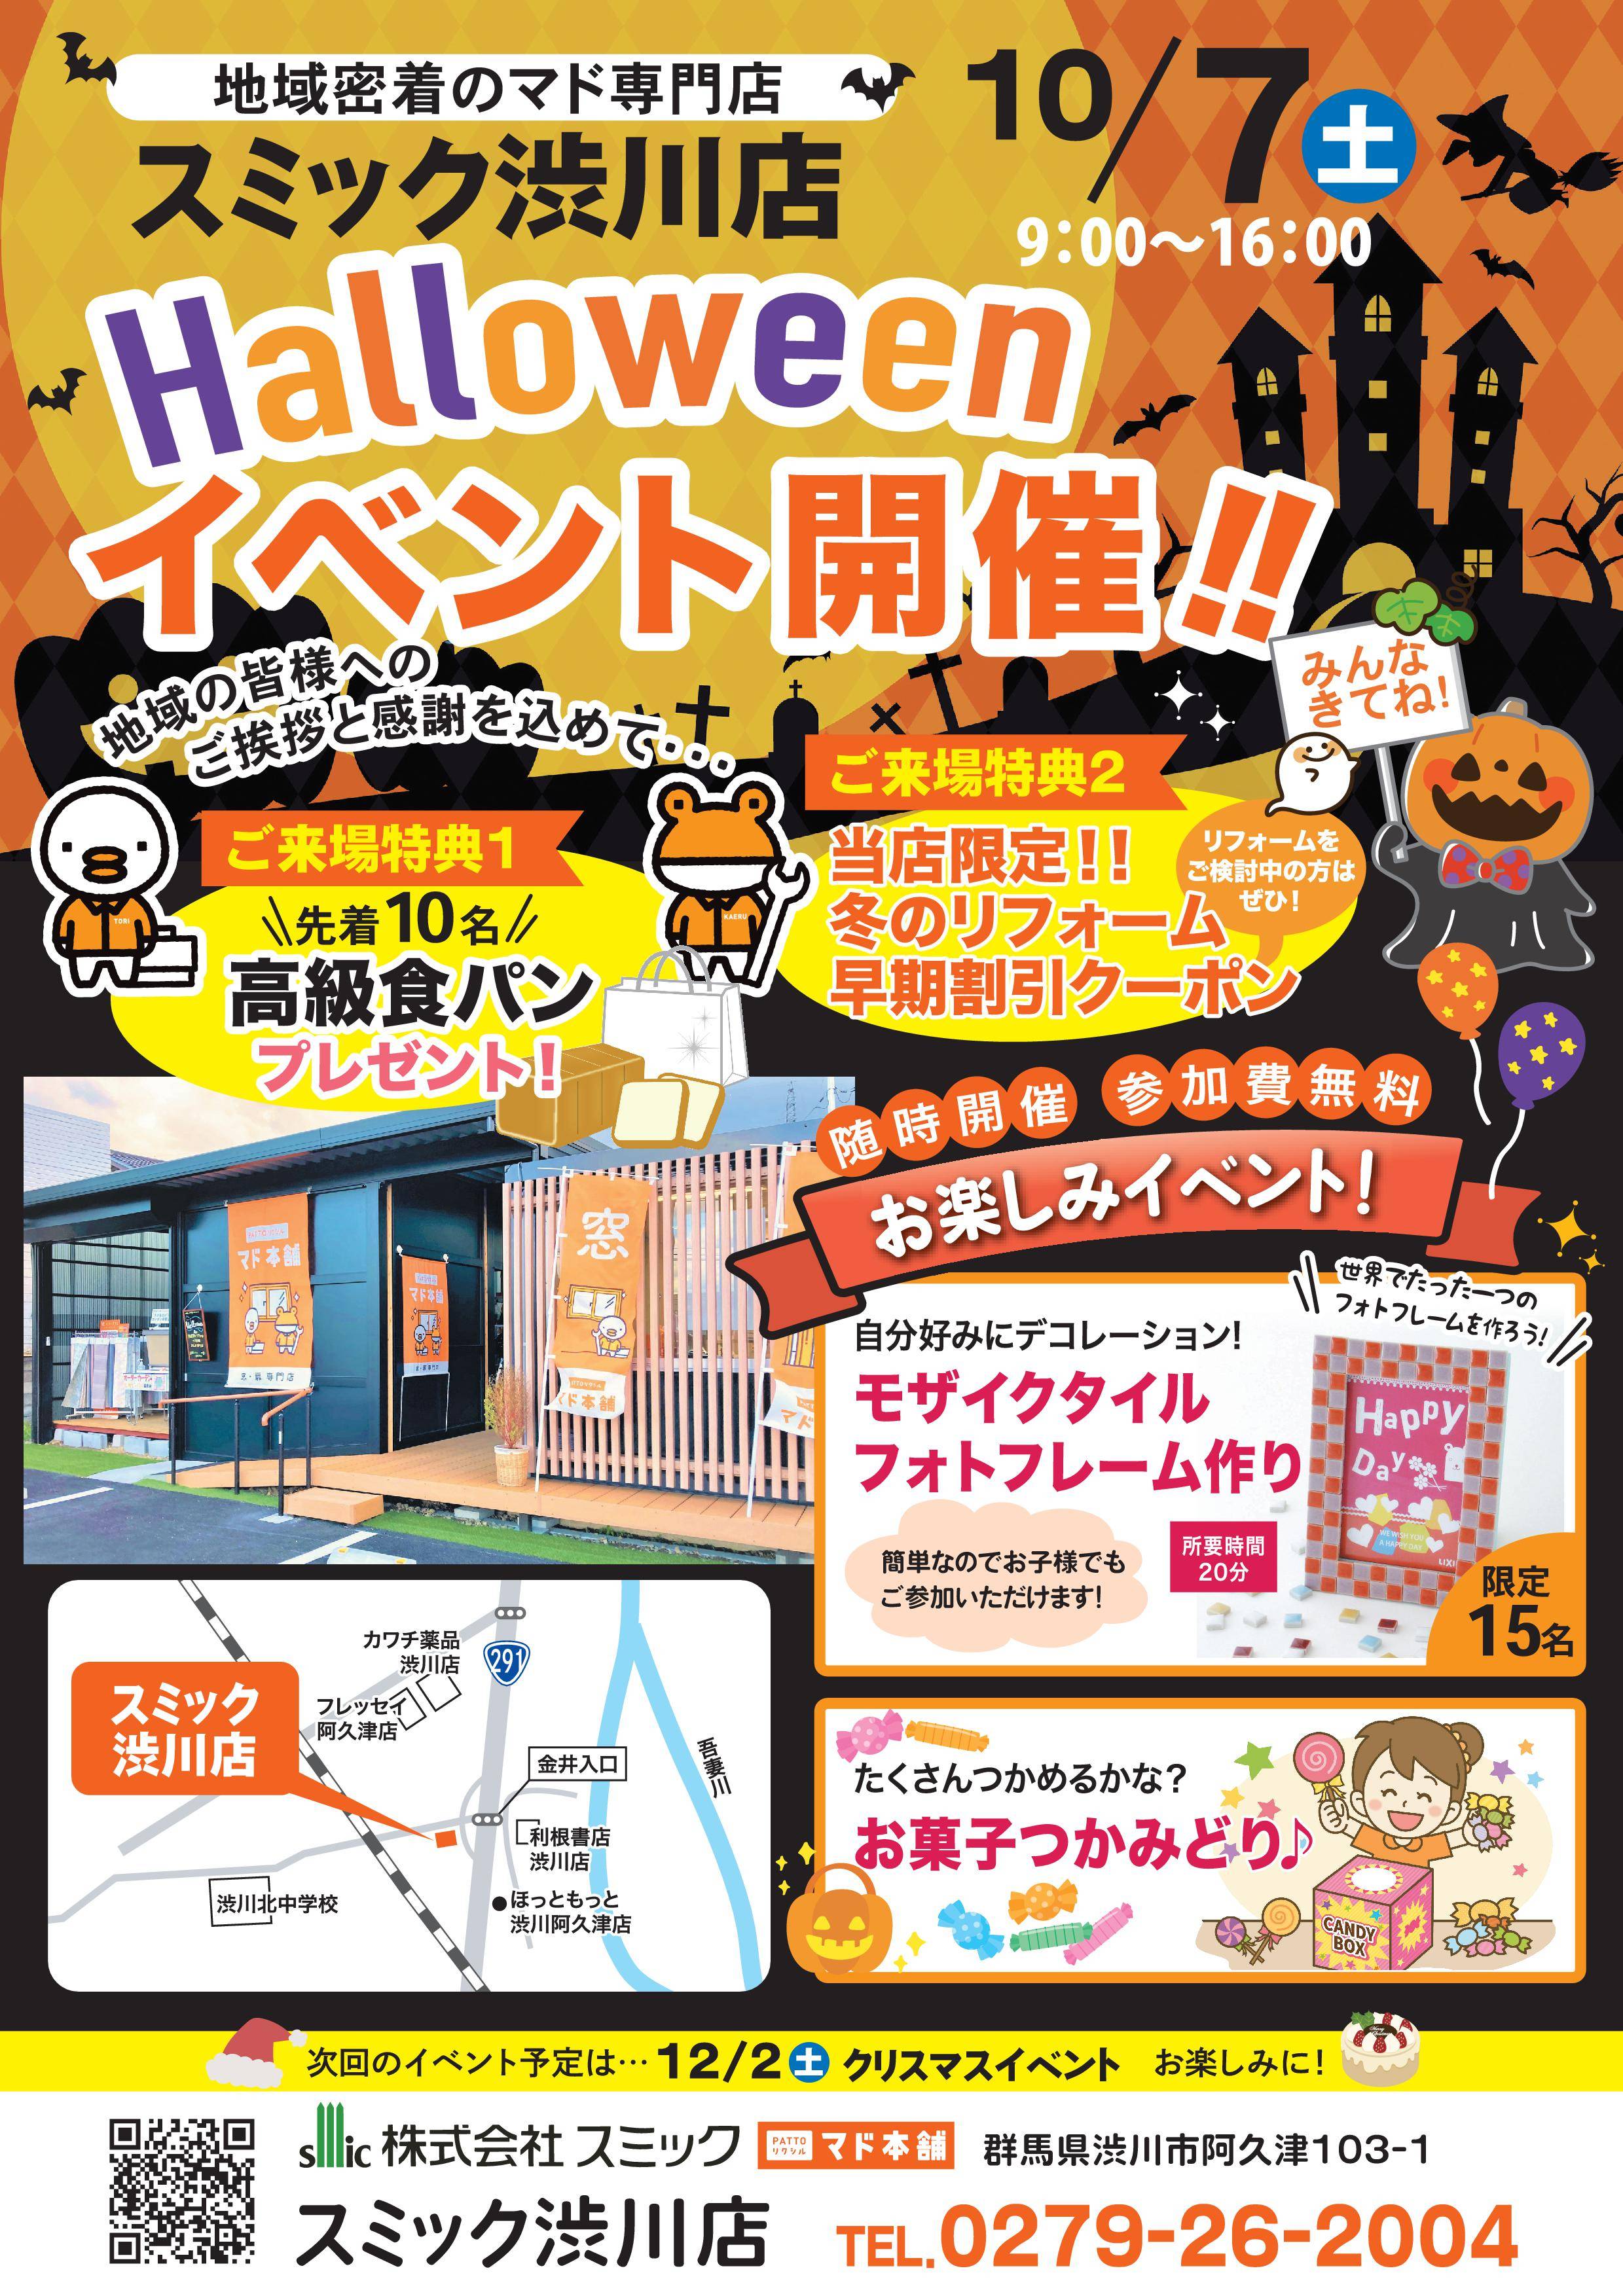 10月7日(土)『ハロウィンイベント』 スミック 渋川店のイベントキャンペーン 写真1